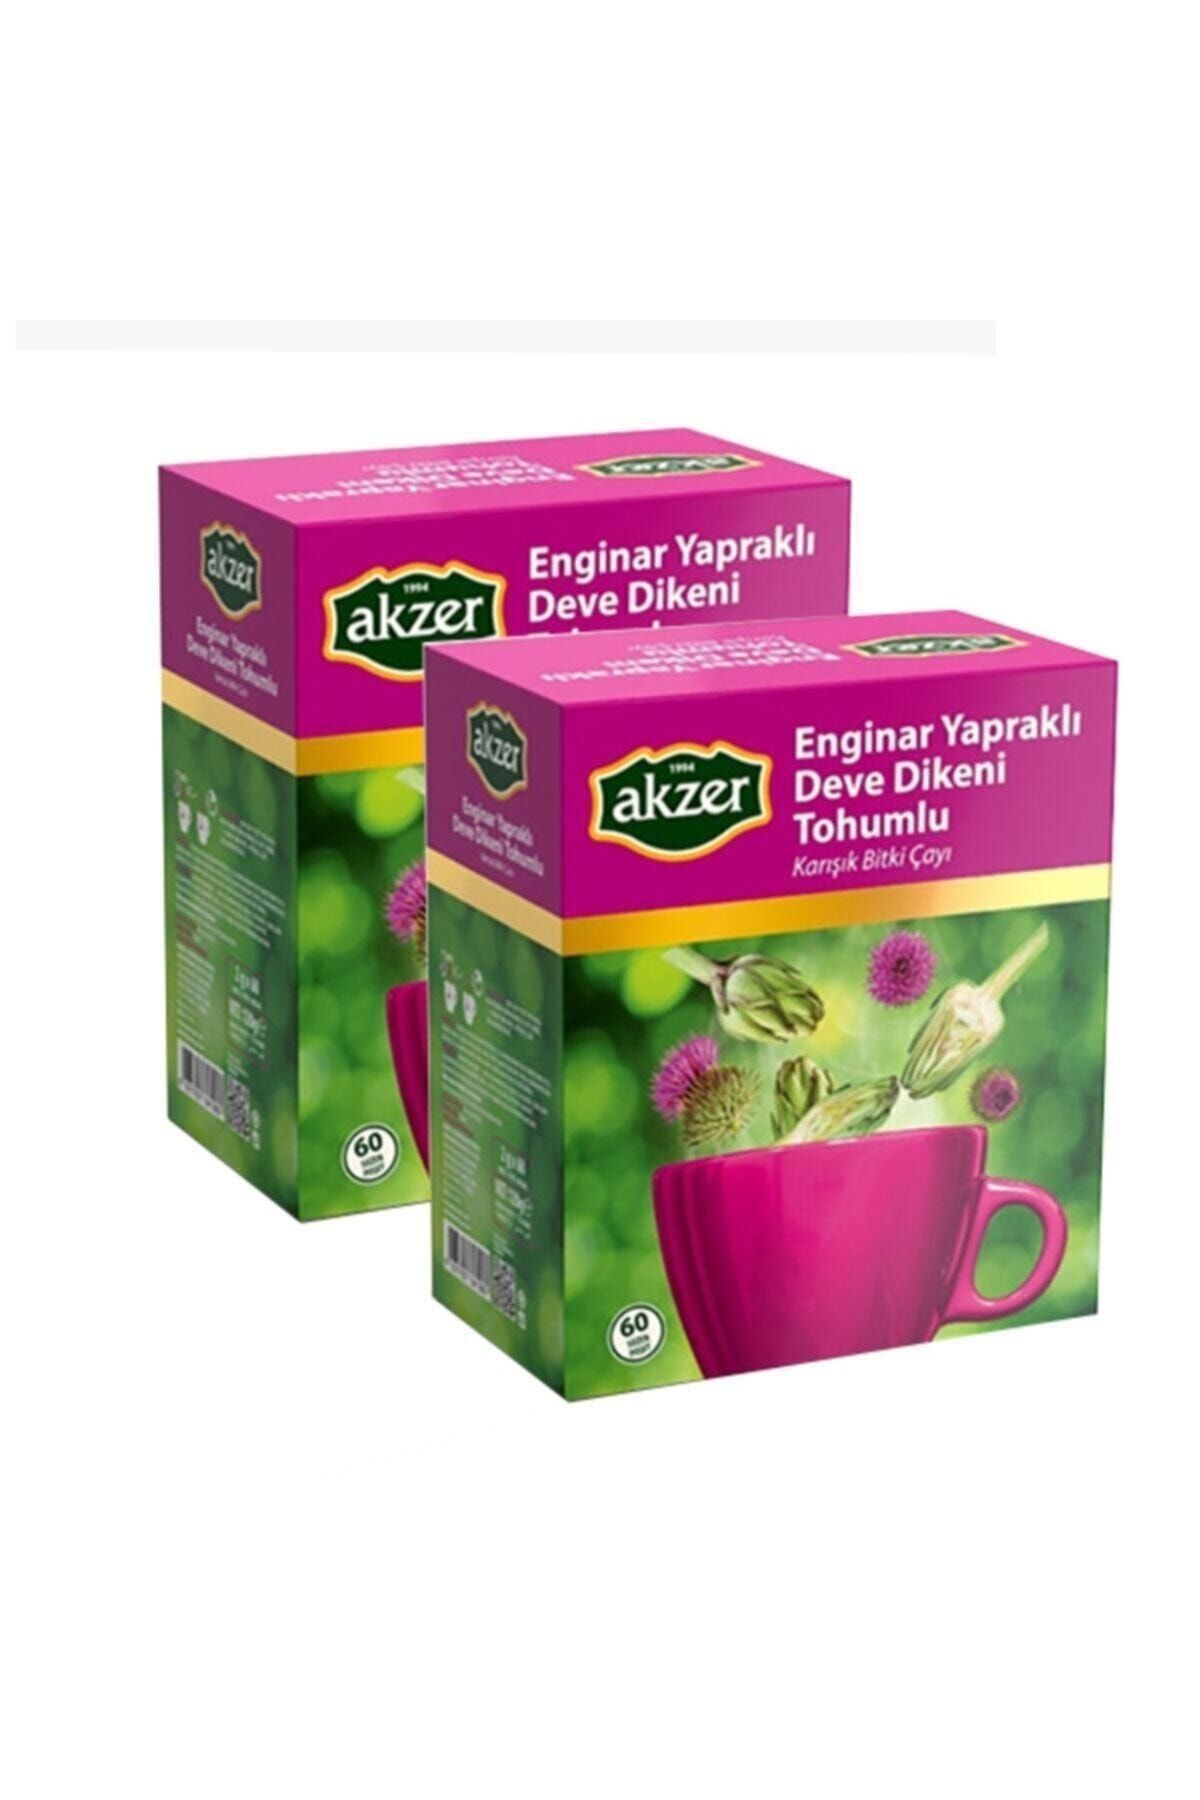 Akzer 2 ADET Enginar Yapraklı Deve Dikeni Tohumlu Süzen Poşet Çay60x2